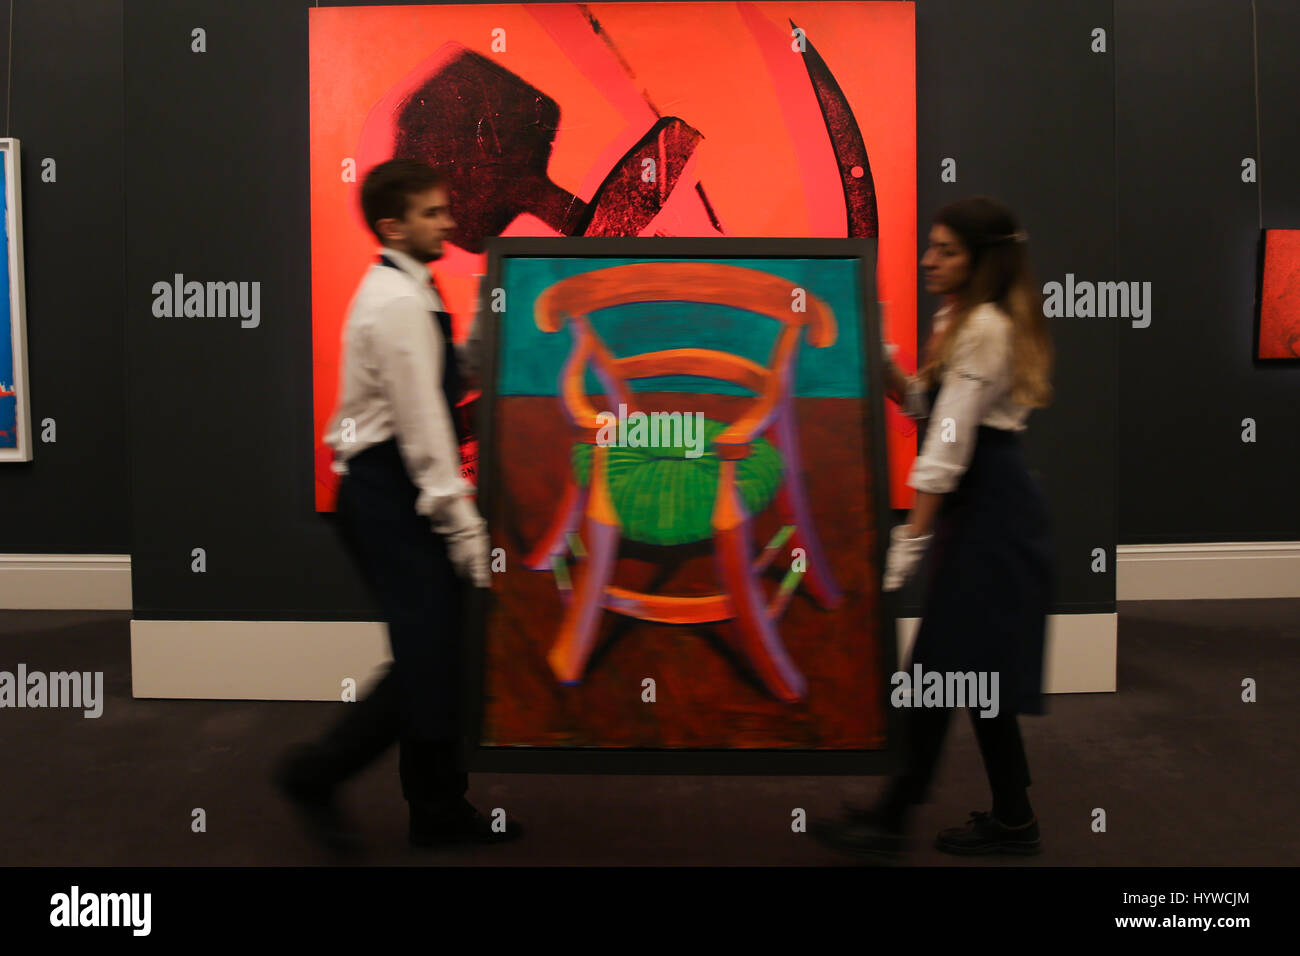 Gauguins Stuhl Stockfotos und -bilder Kaufen - Alamy